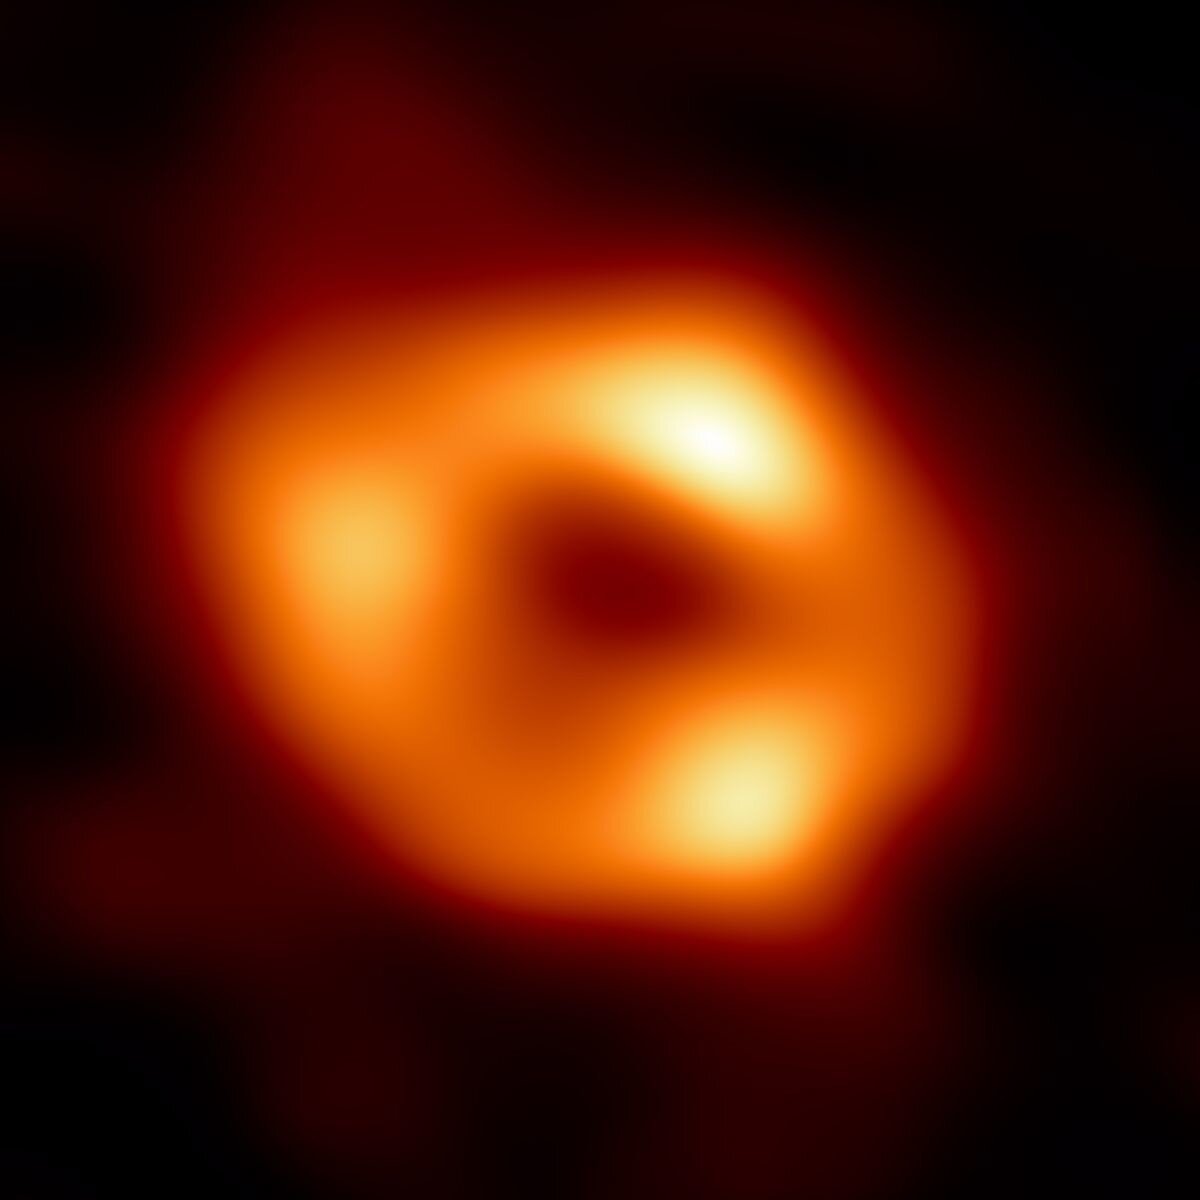 Знакомьтесь - Стрелец A*: Астрономы показали первое изображение черной дыры в сердце Млечного Пути